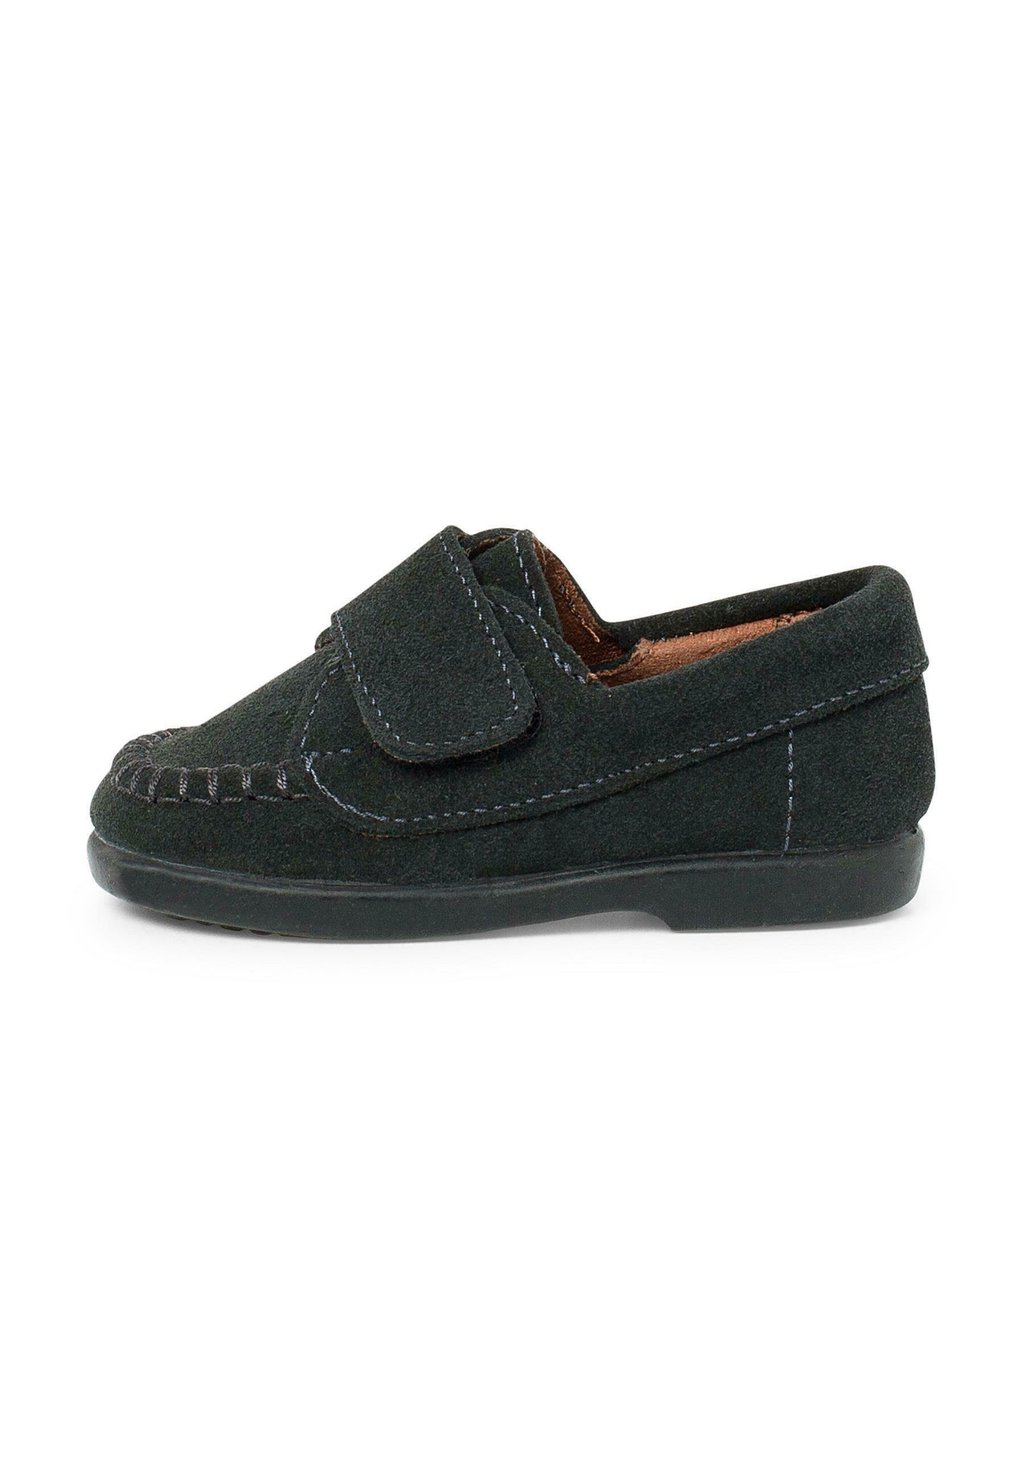 Обувь для обучения TIRA ADHERENTE Pisamonas, цвет gris обувь для обучения inglesito pisamonas цвет gris claro